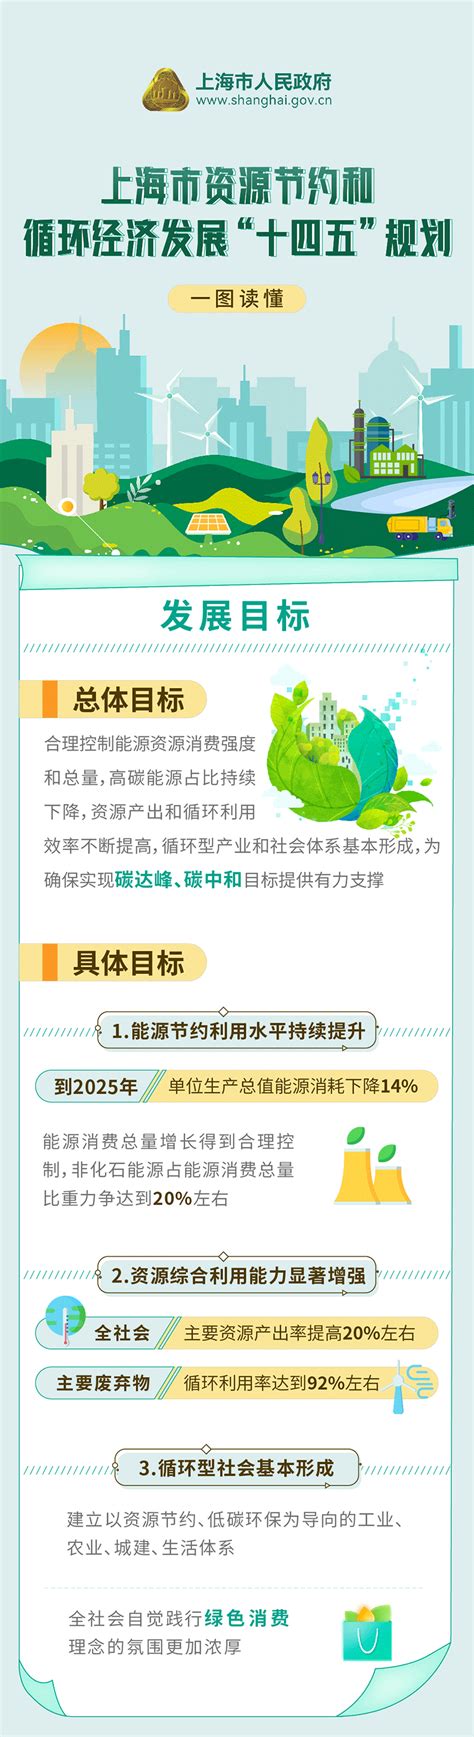 一图读懂《上海市数字经济“十四五”发展规划》